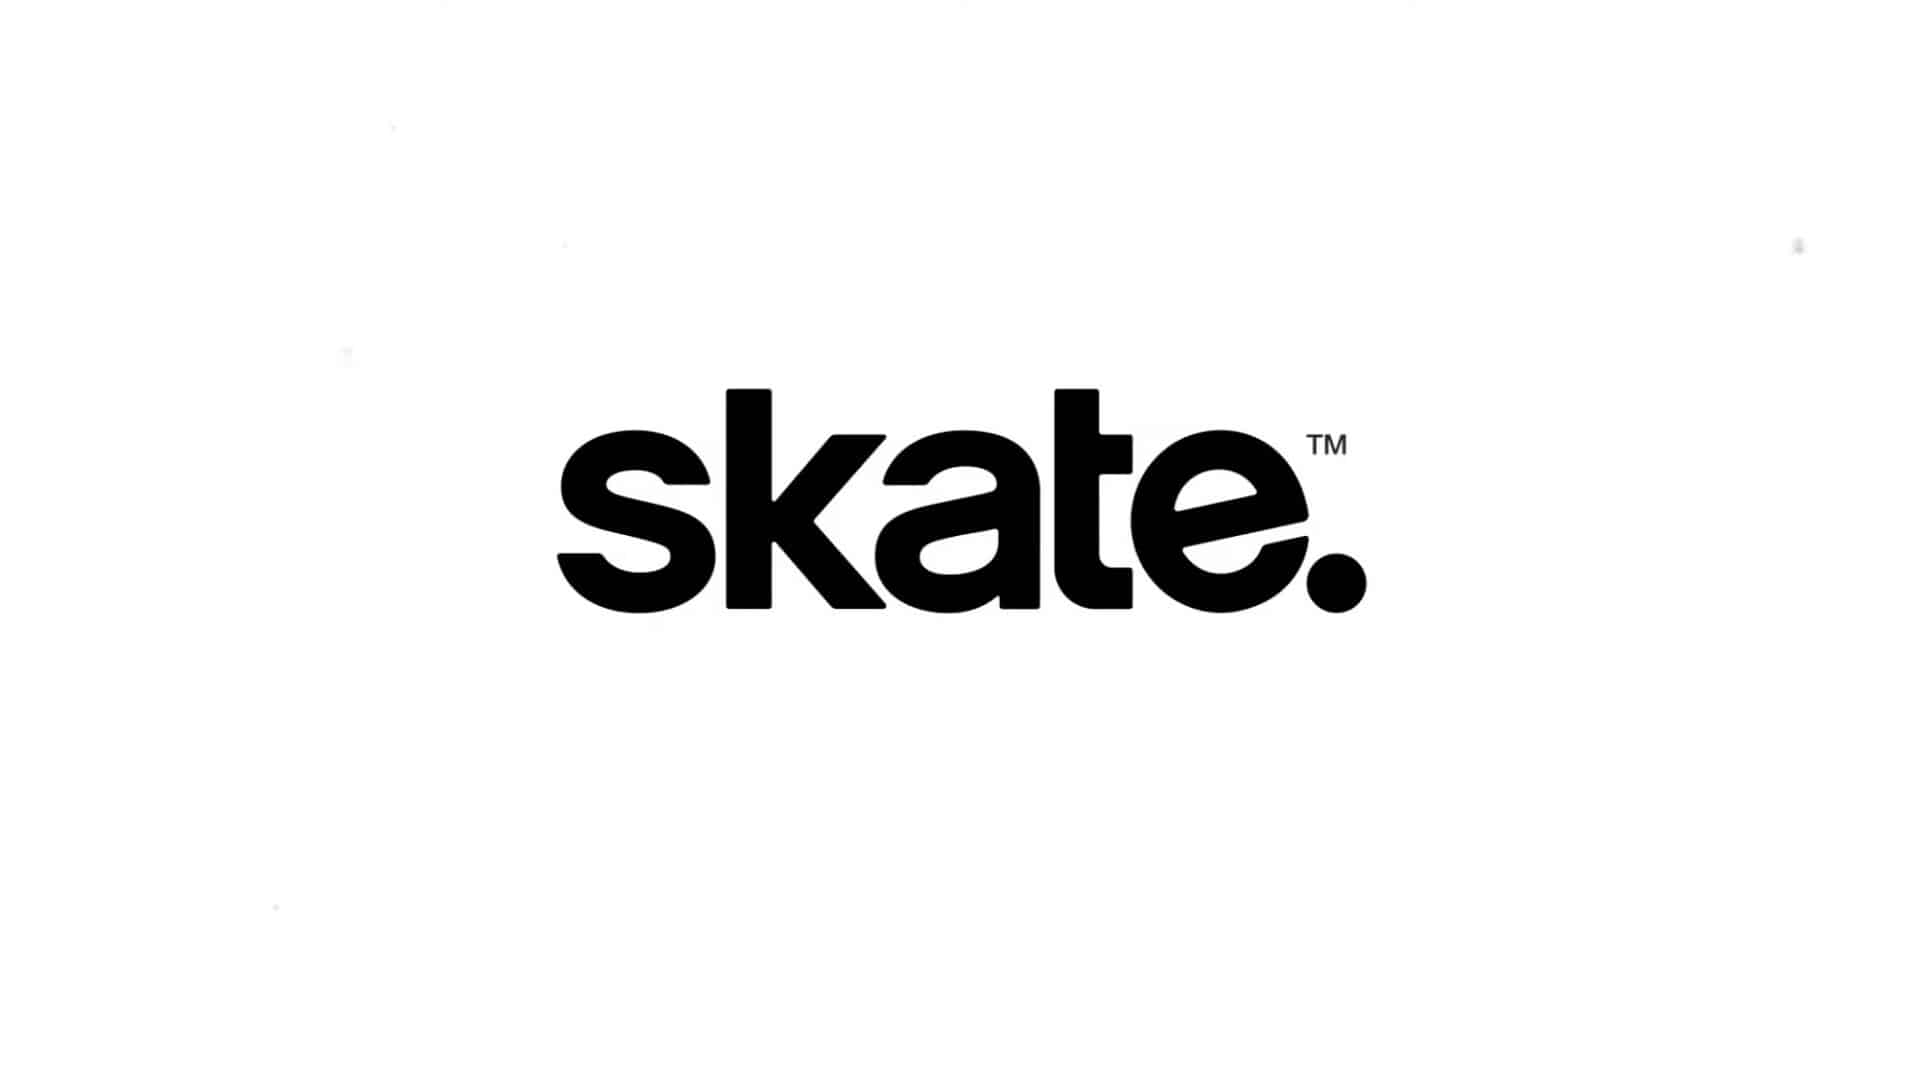 ea skate logo